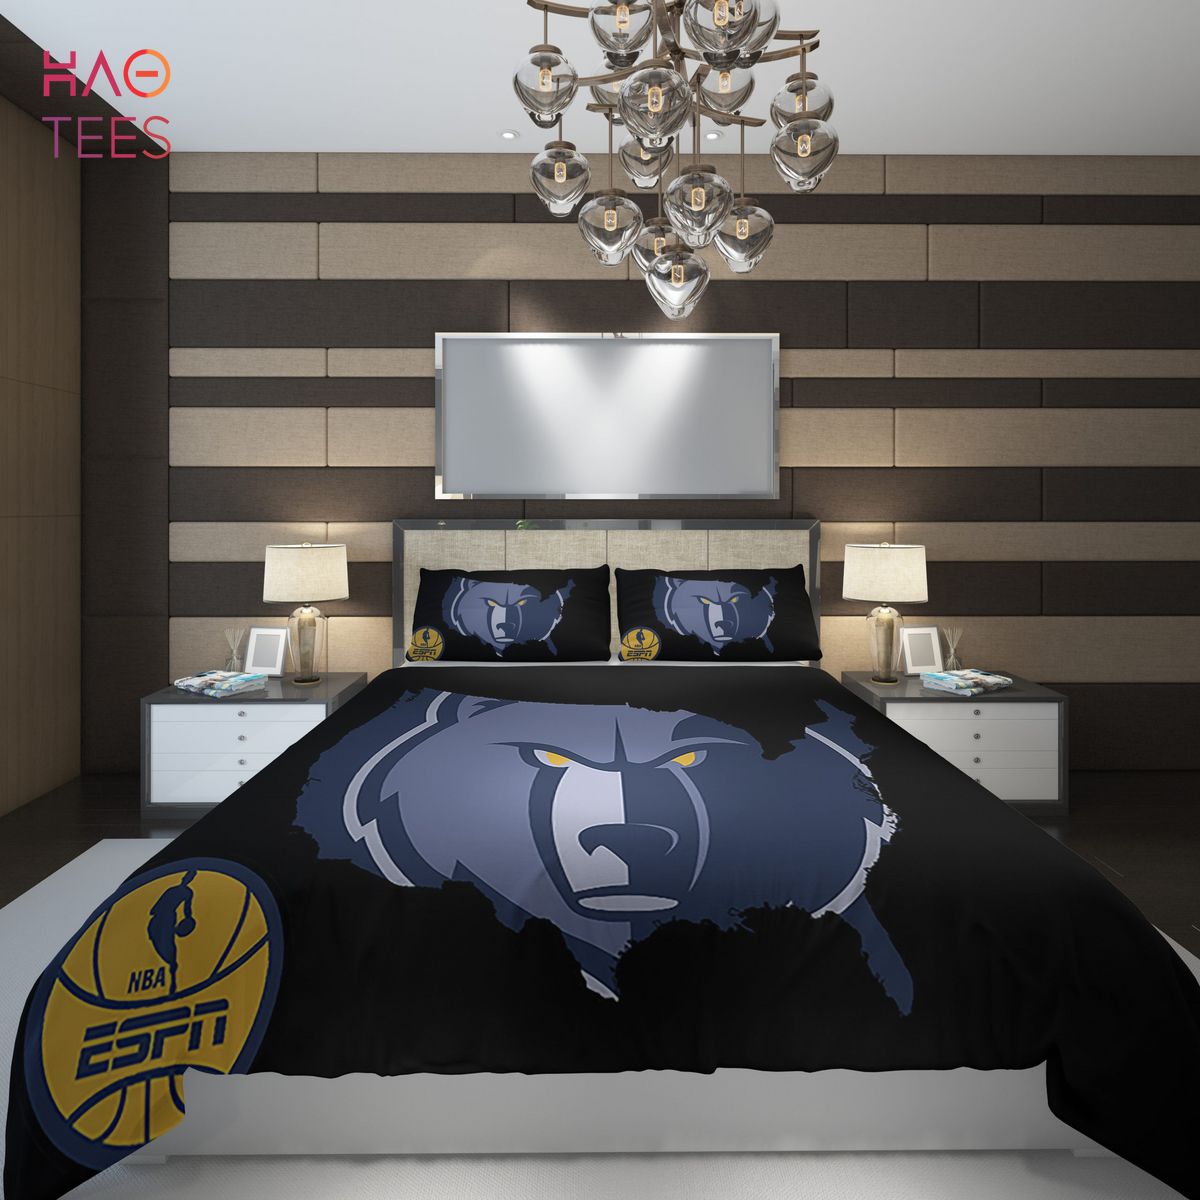 BEST Memphis Grizzlies NBA Basketball ize Duvet Cover and Pillowcase Set Bedding Set